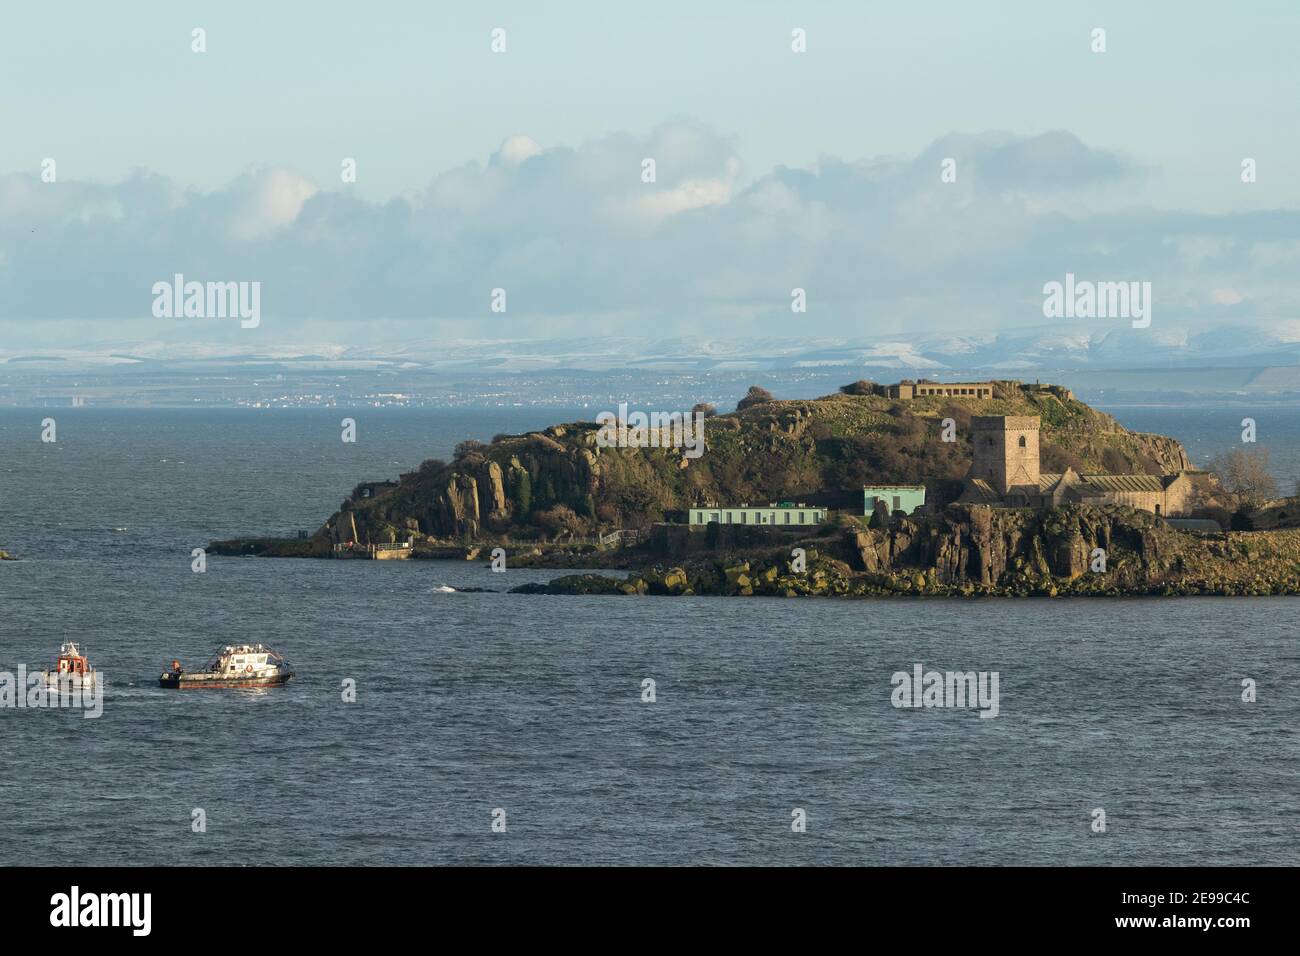 A tug boat sitting near Inchcolm Island, Firth of Forth, Scotland Stock Photo